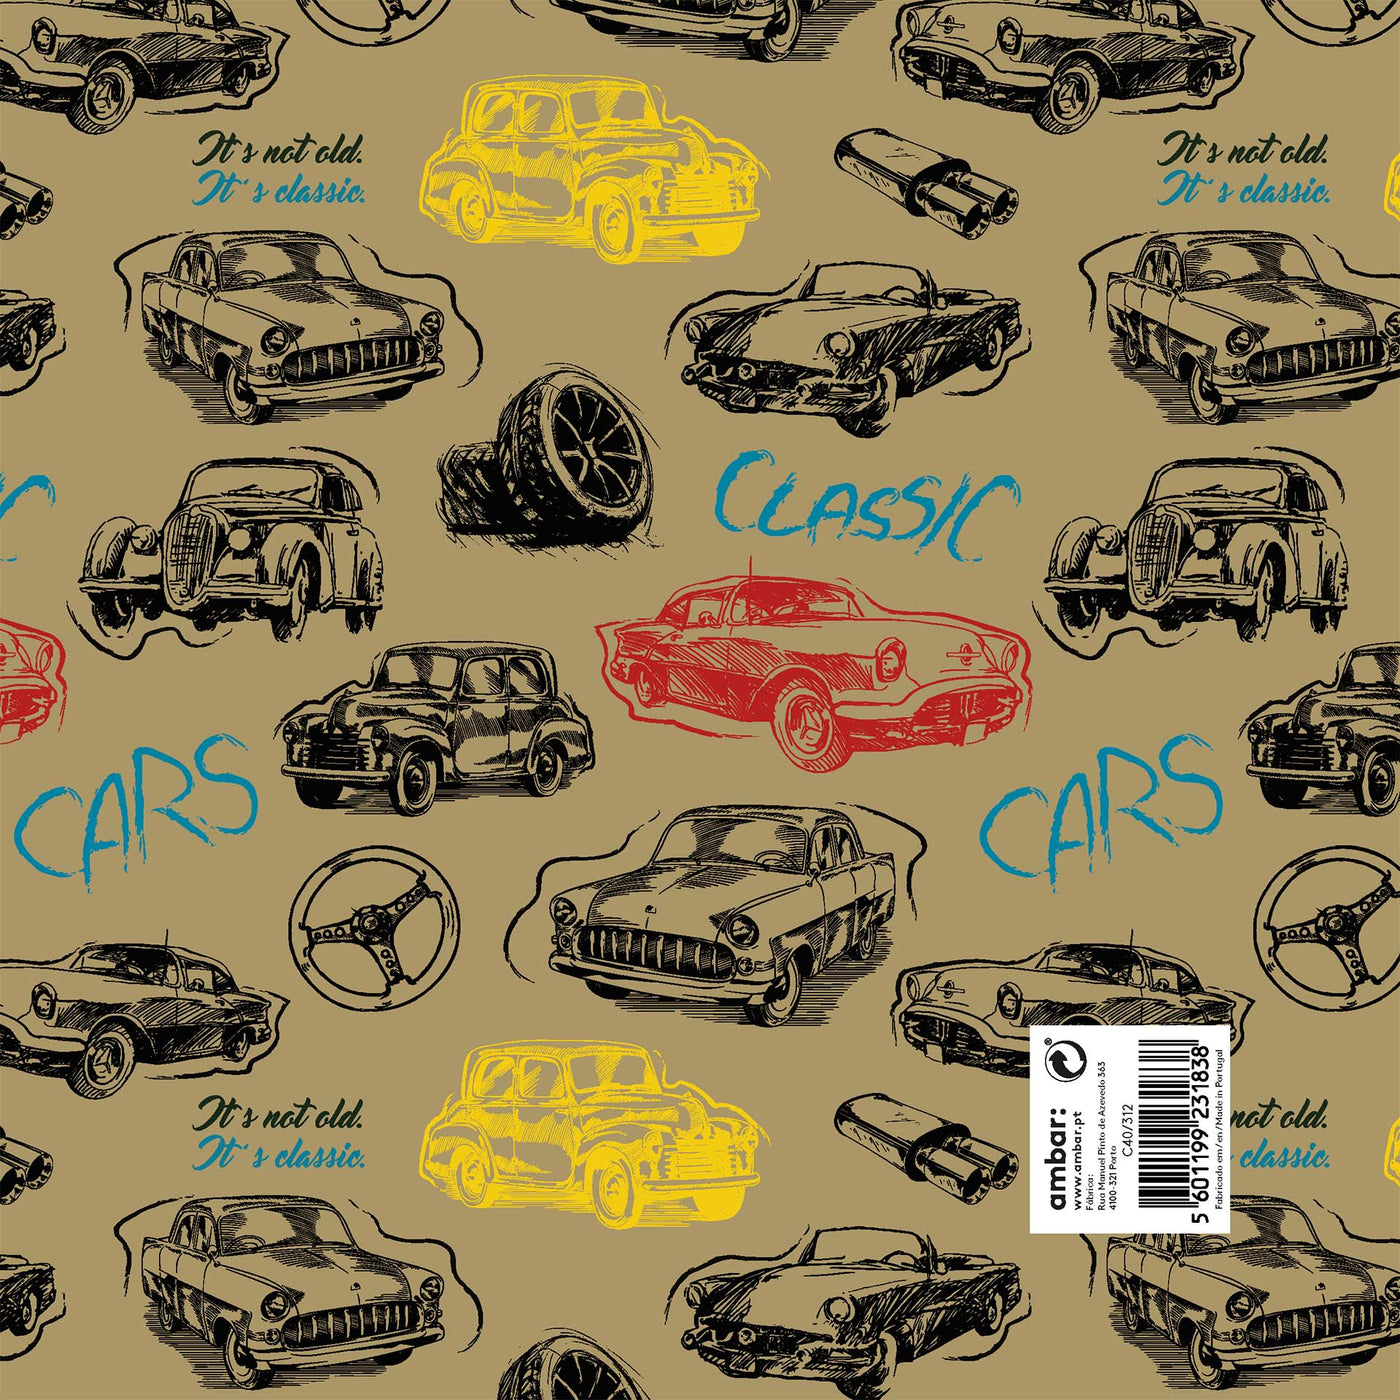 Resma de 25 Folhas de Papel Clássico Classic Cars C40/312